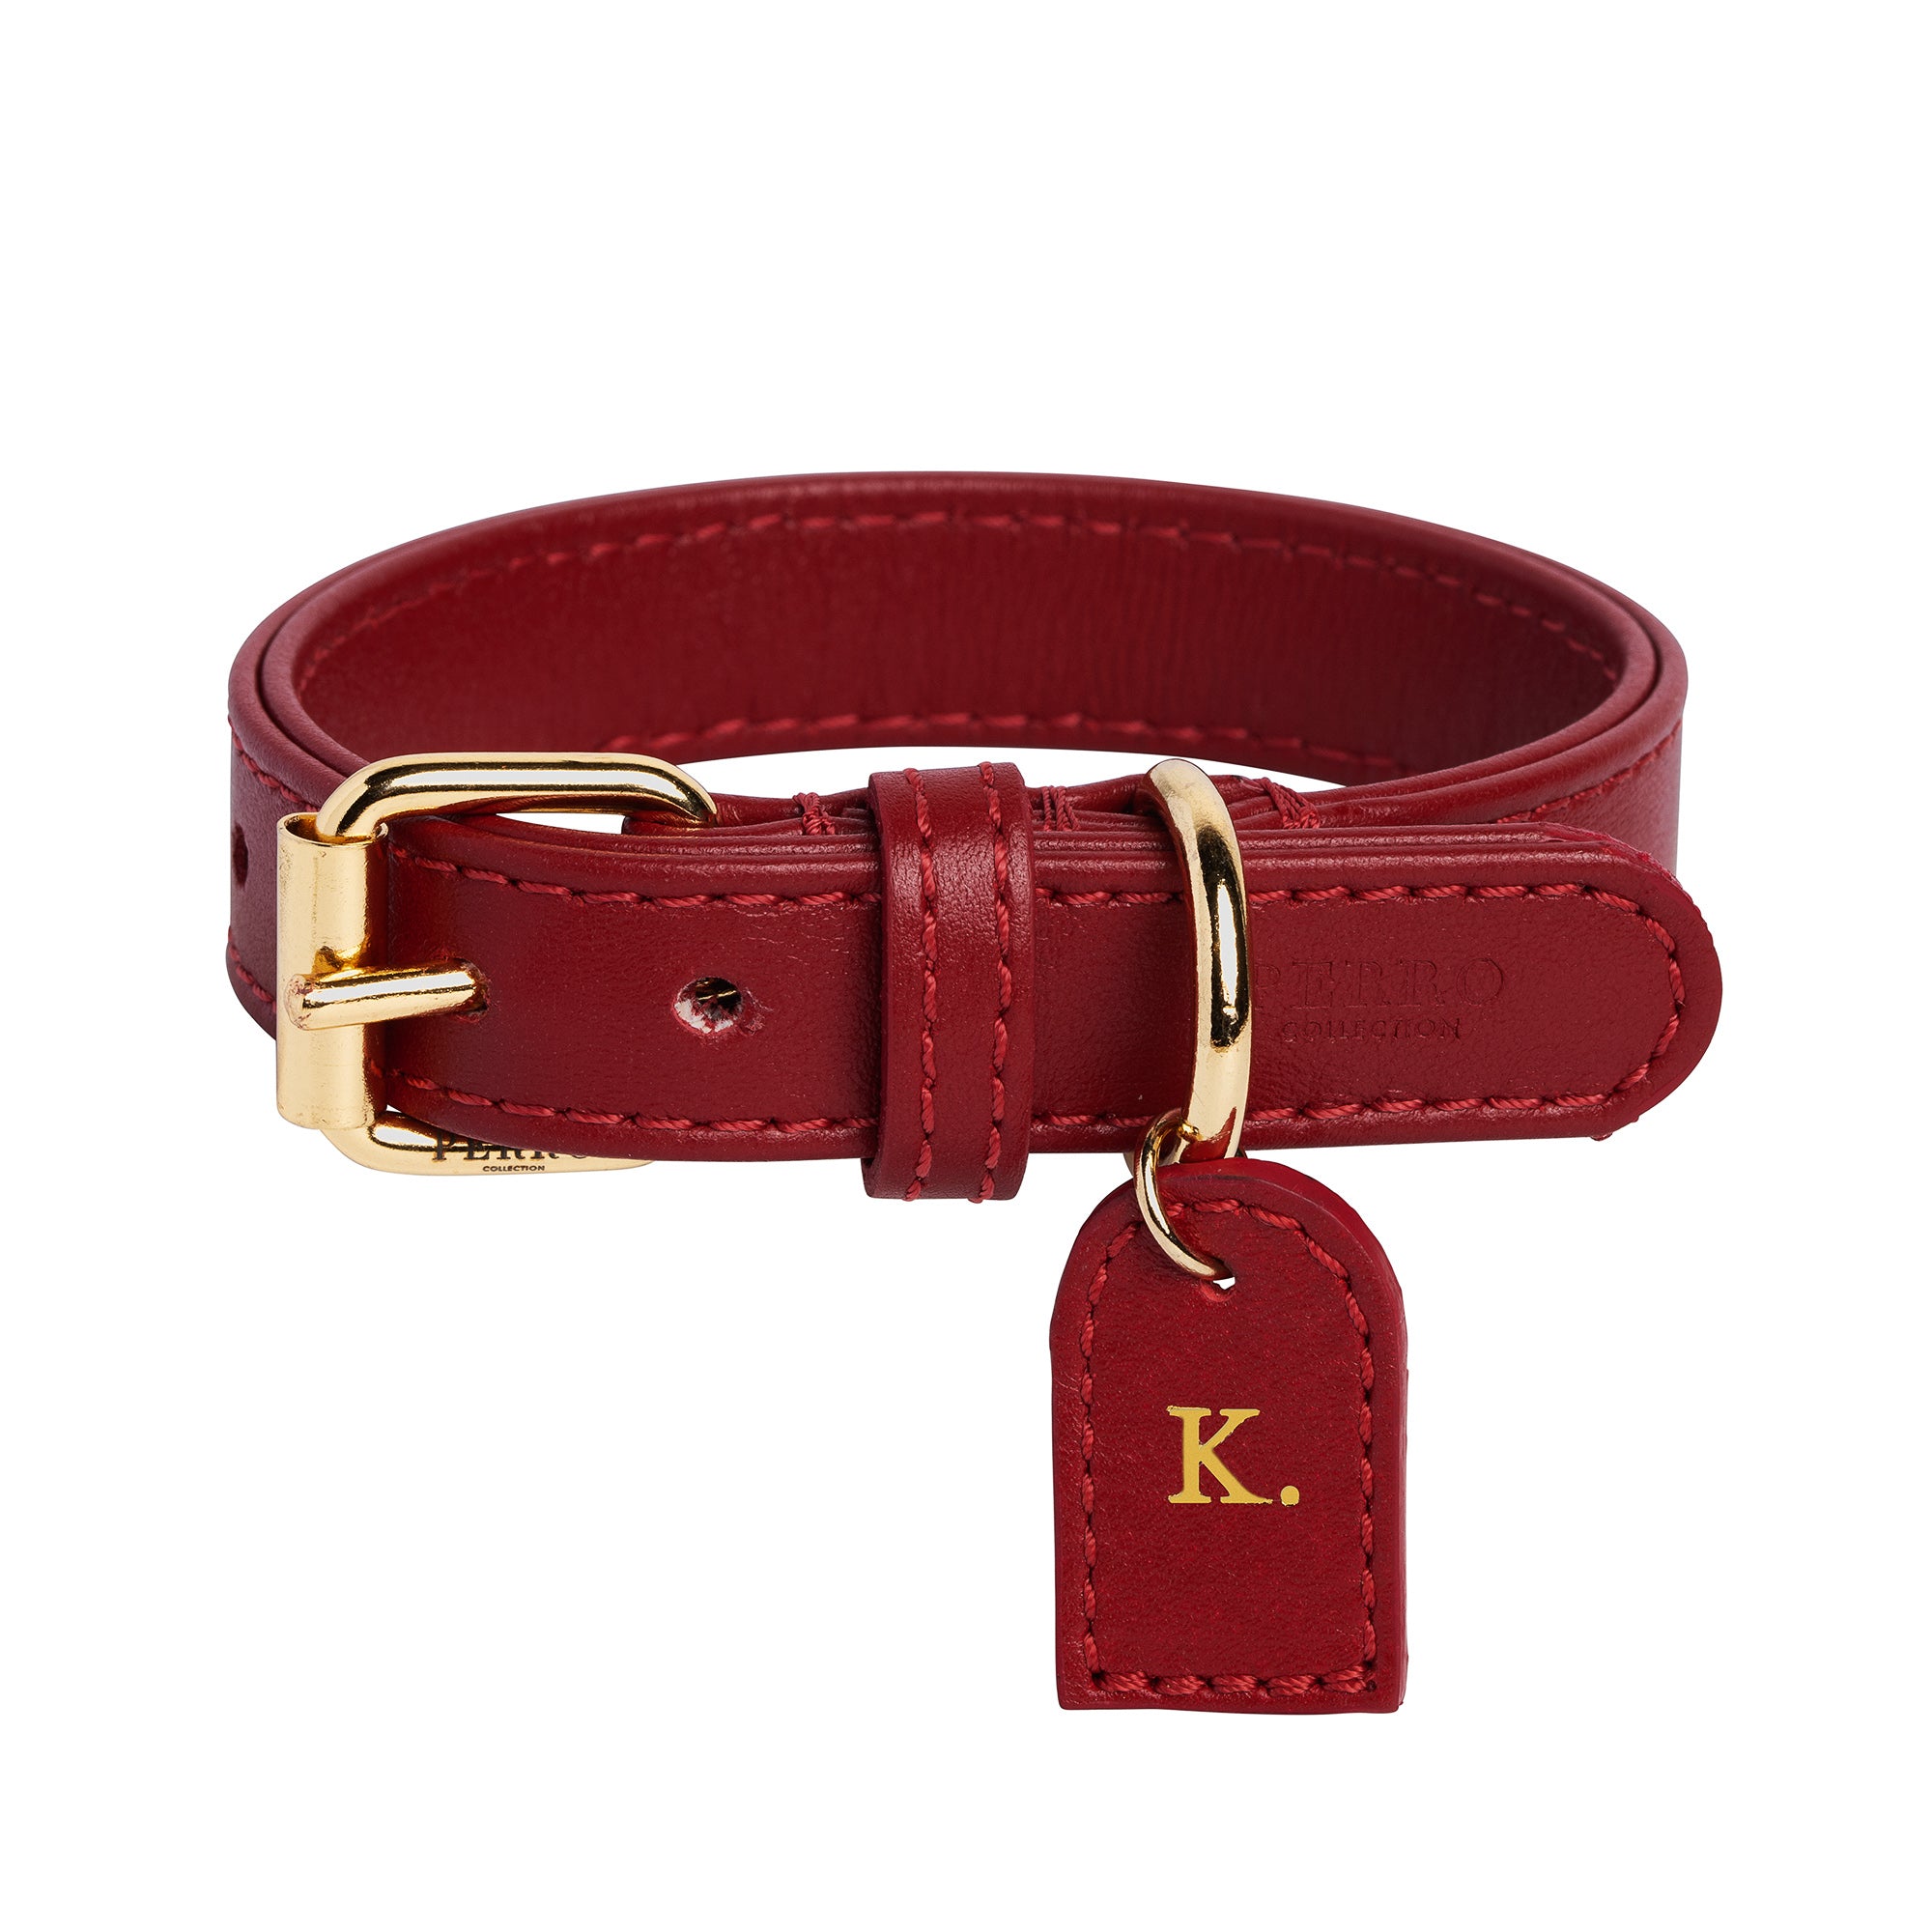 Louis Vuitton Dog Collars 